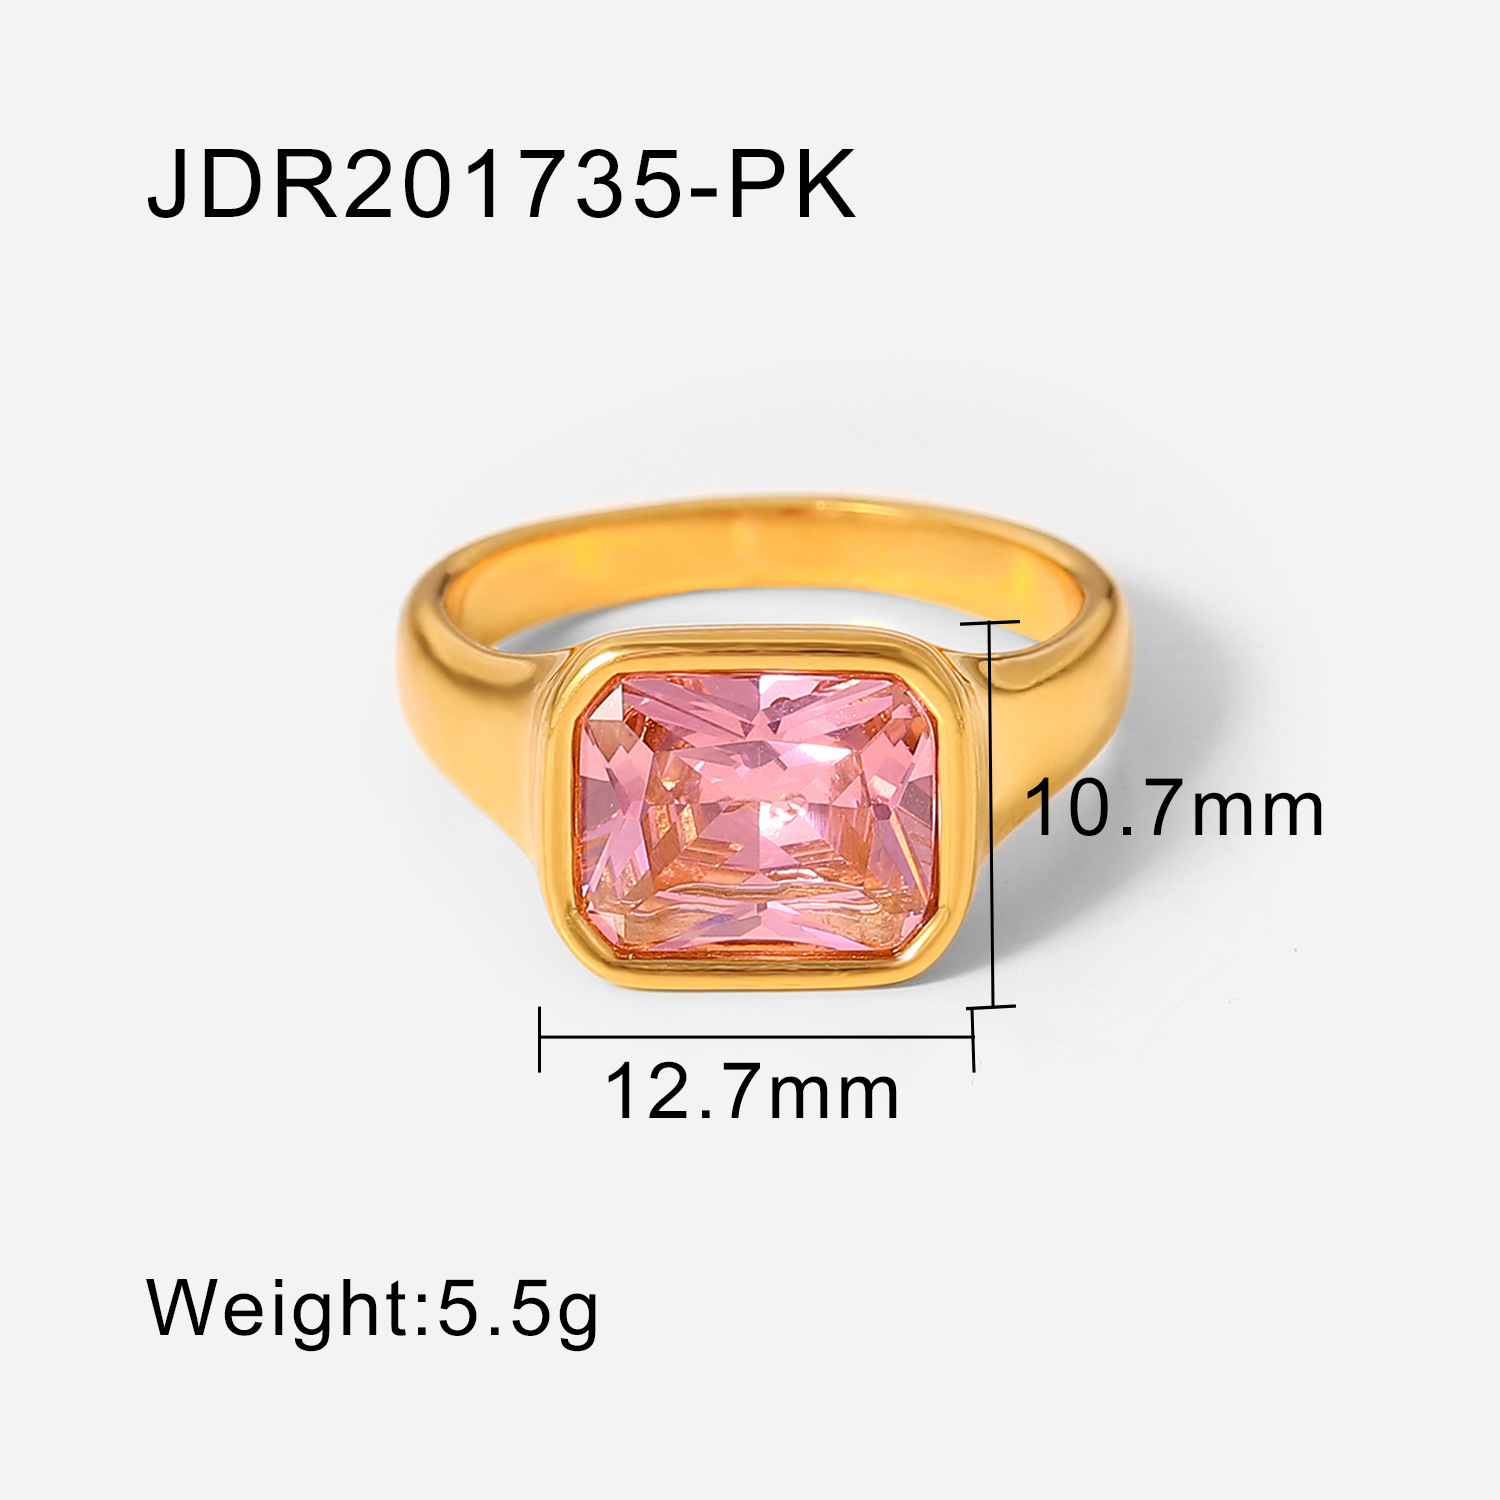 JDR201735-PK